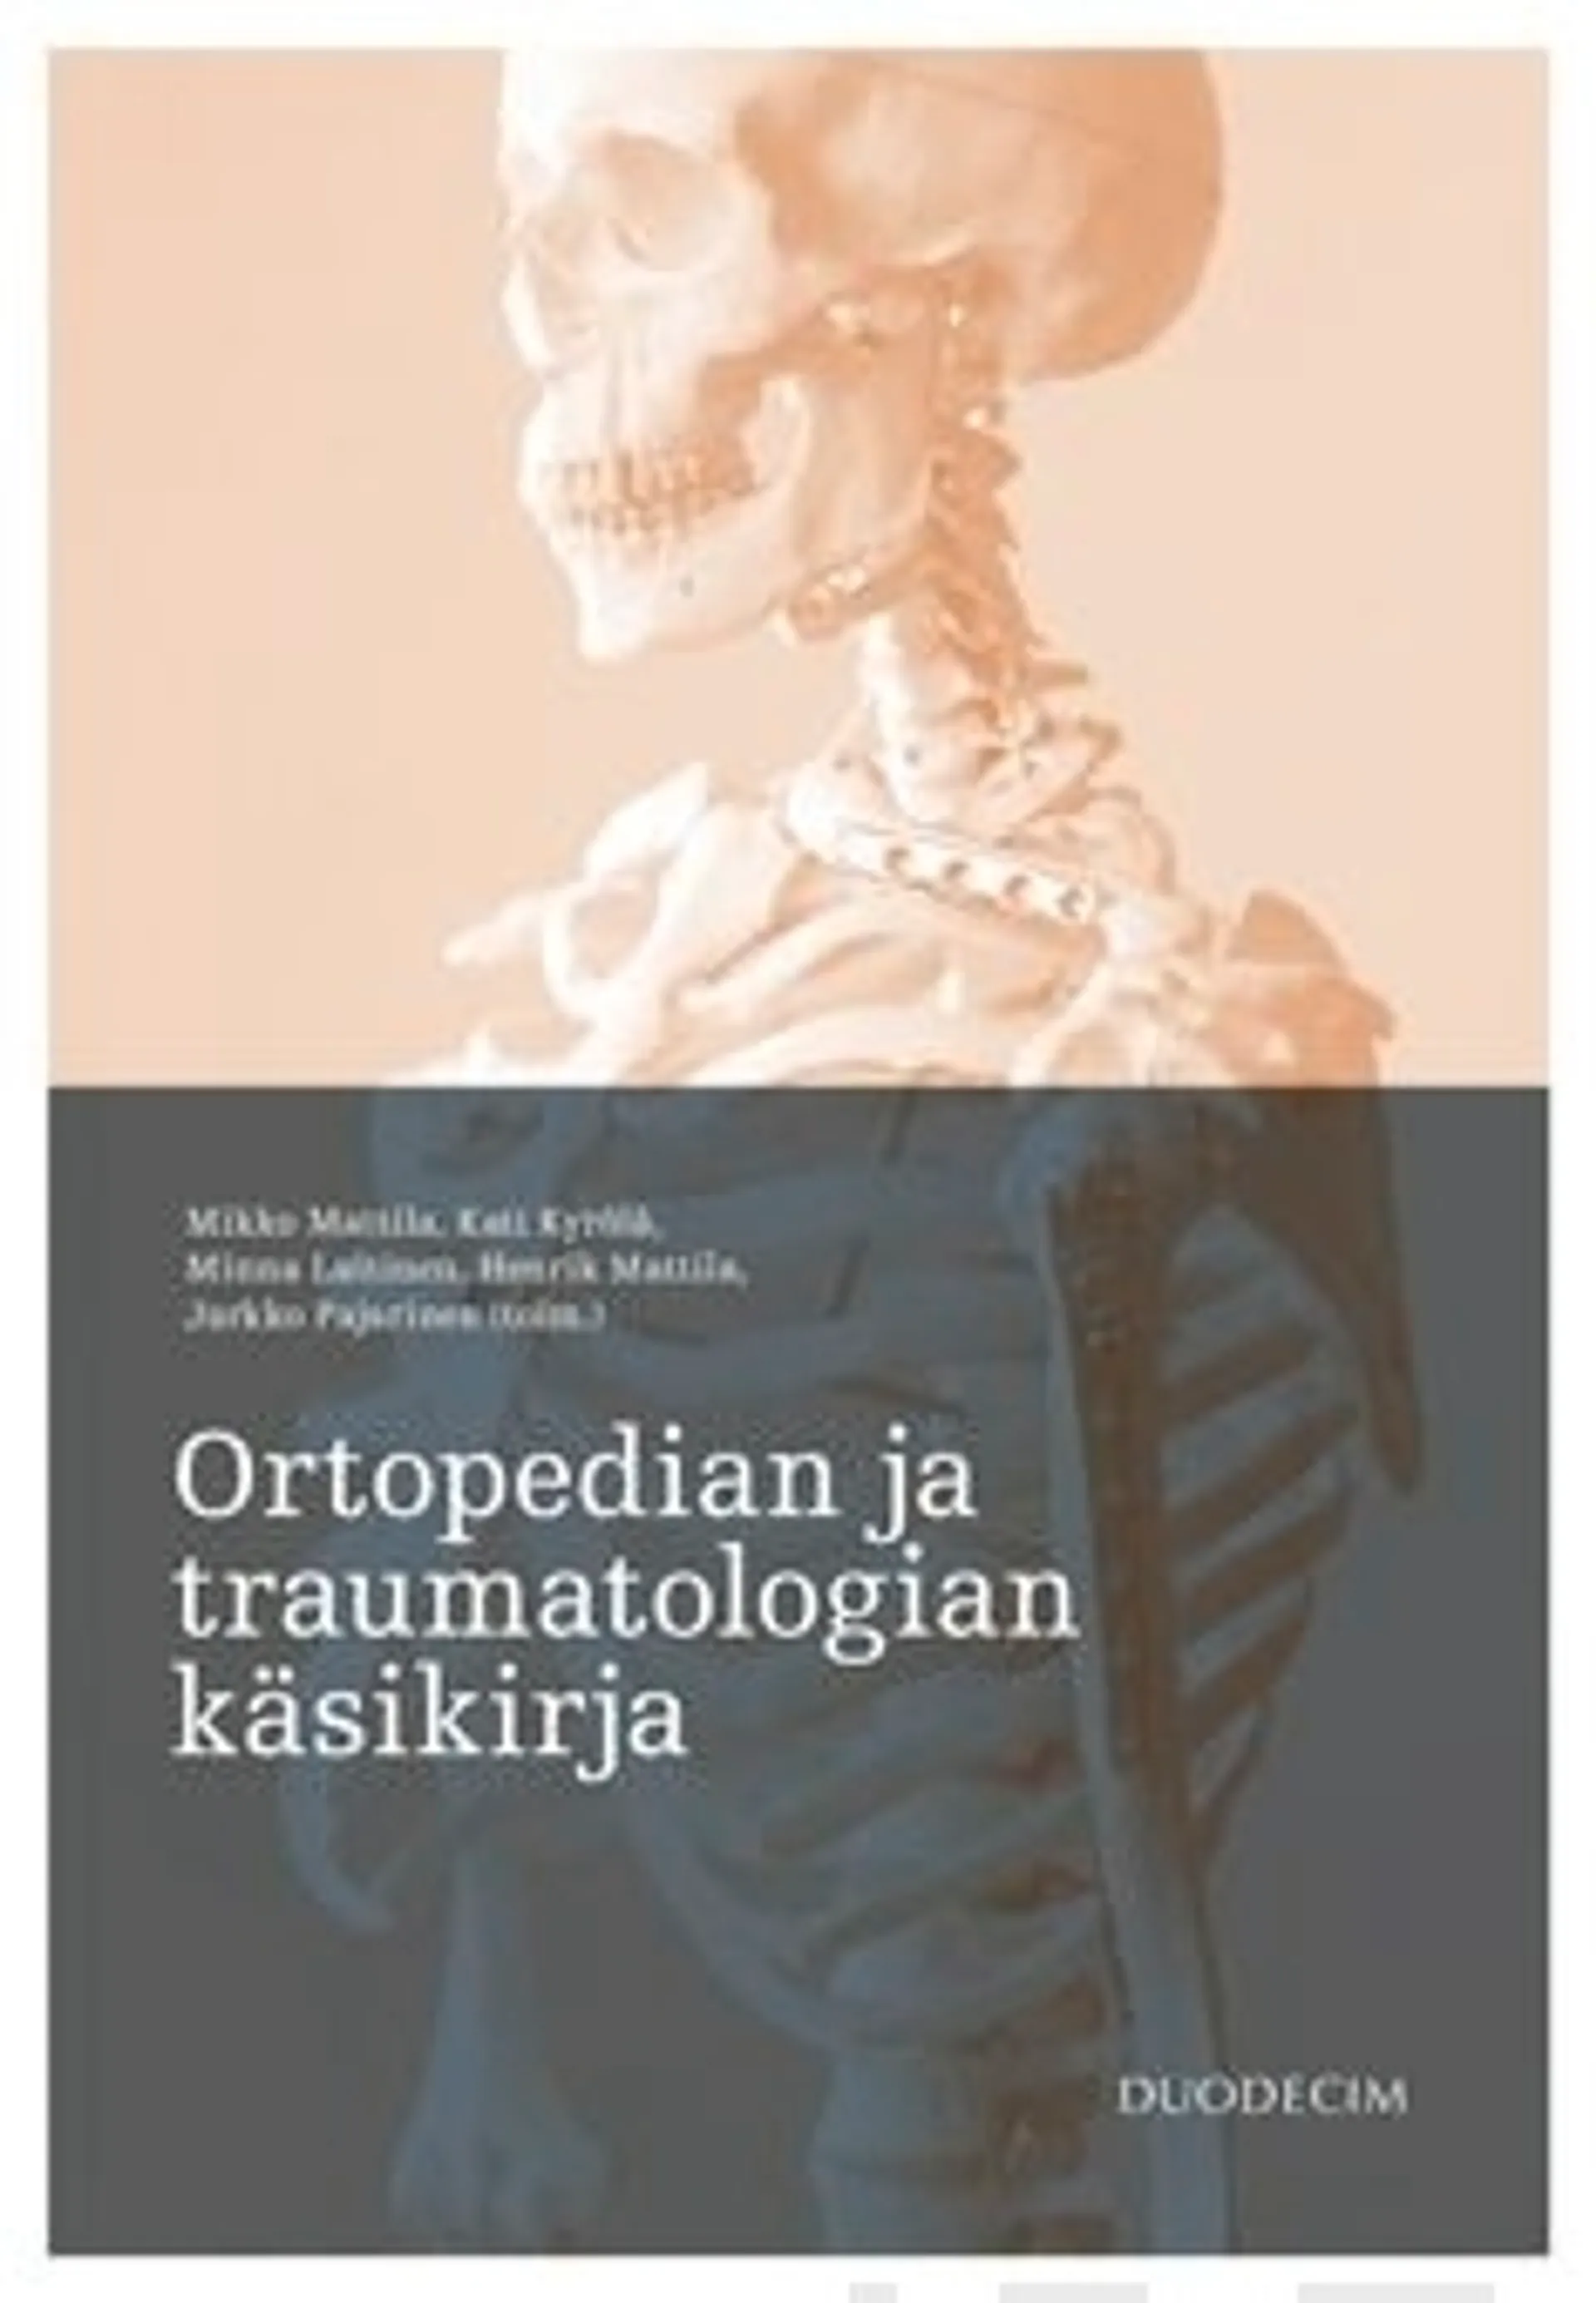 Ortopedian ja traumatologian käsikirja